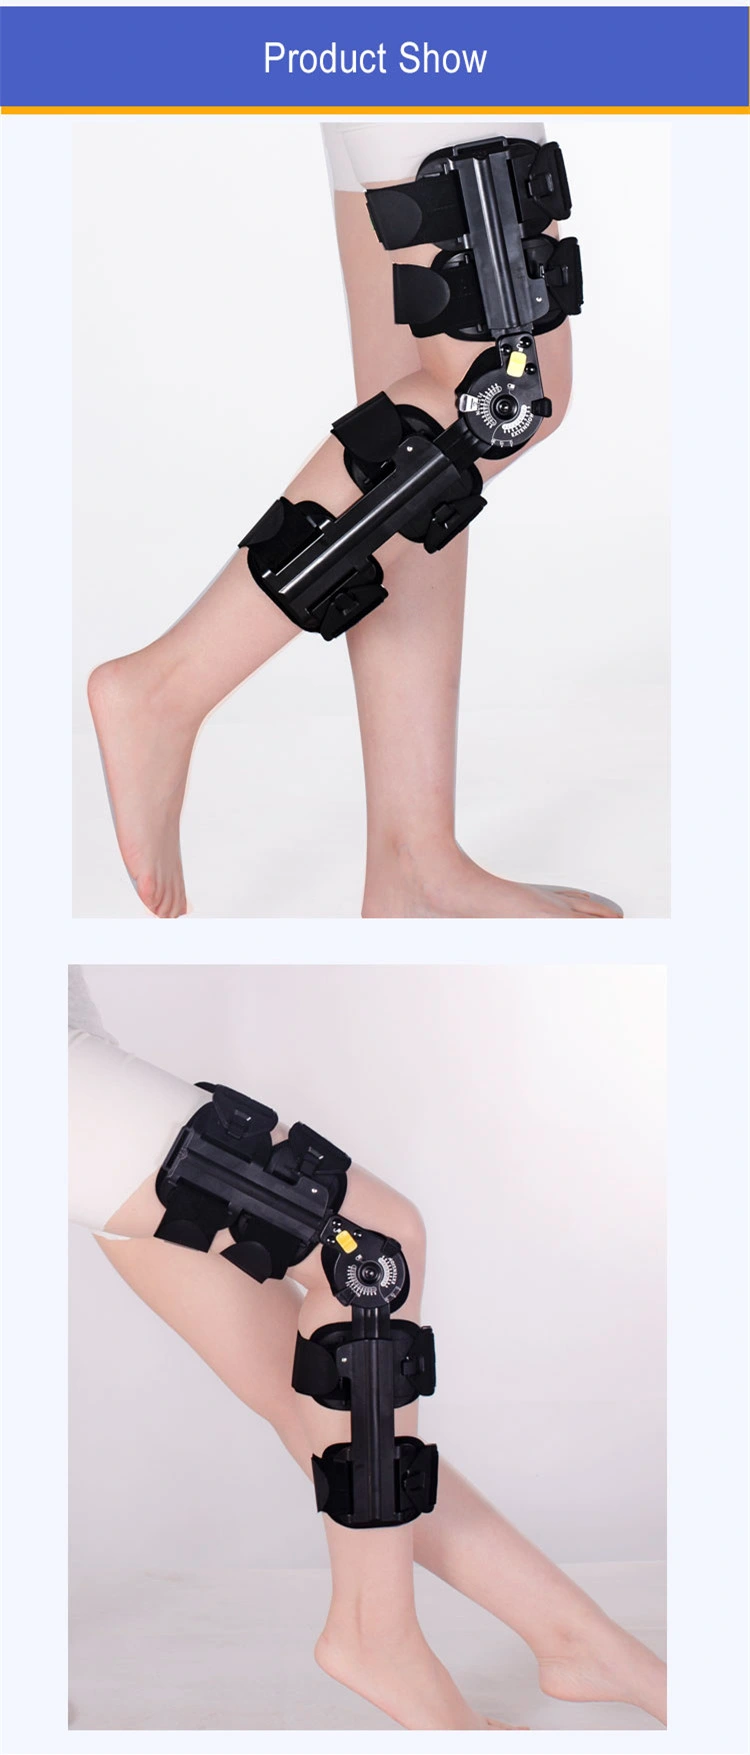 Angle Adjustable Knee Brace ROM Hinged Knee Orthopedic Knee Support Brace for Adults